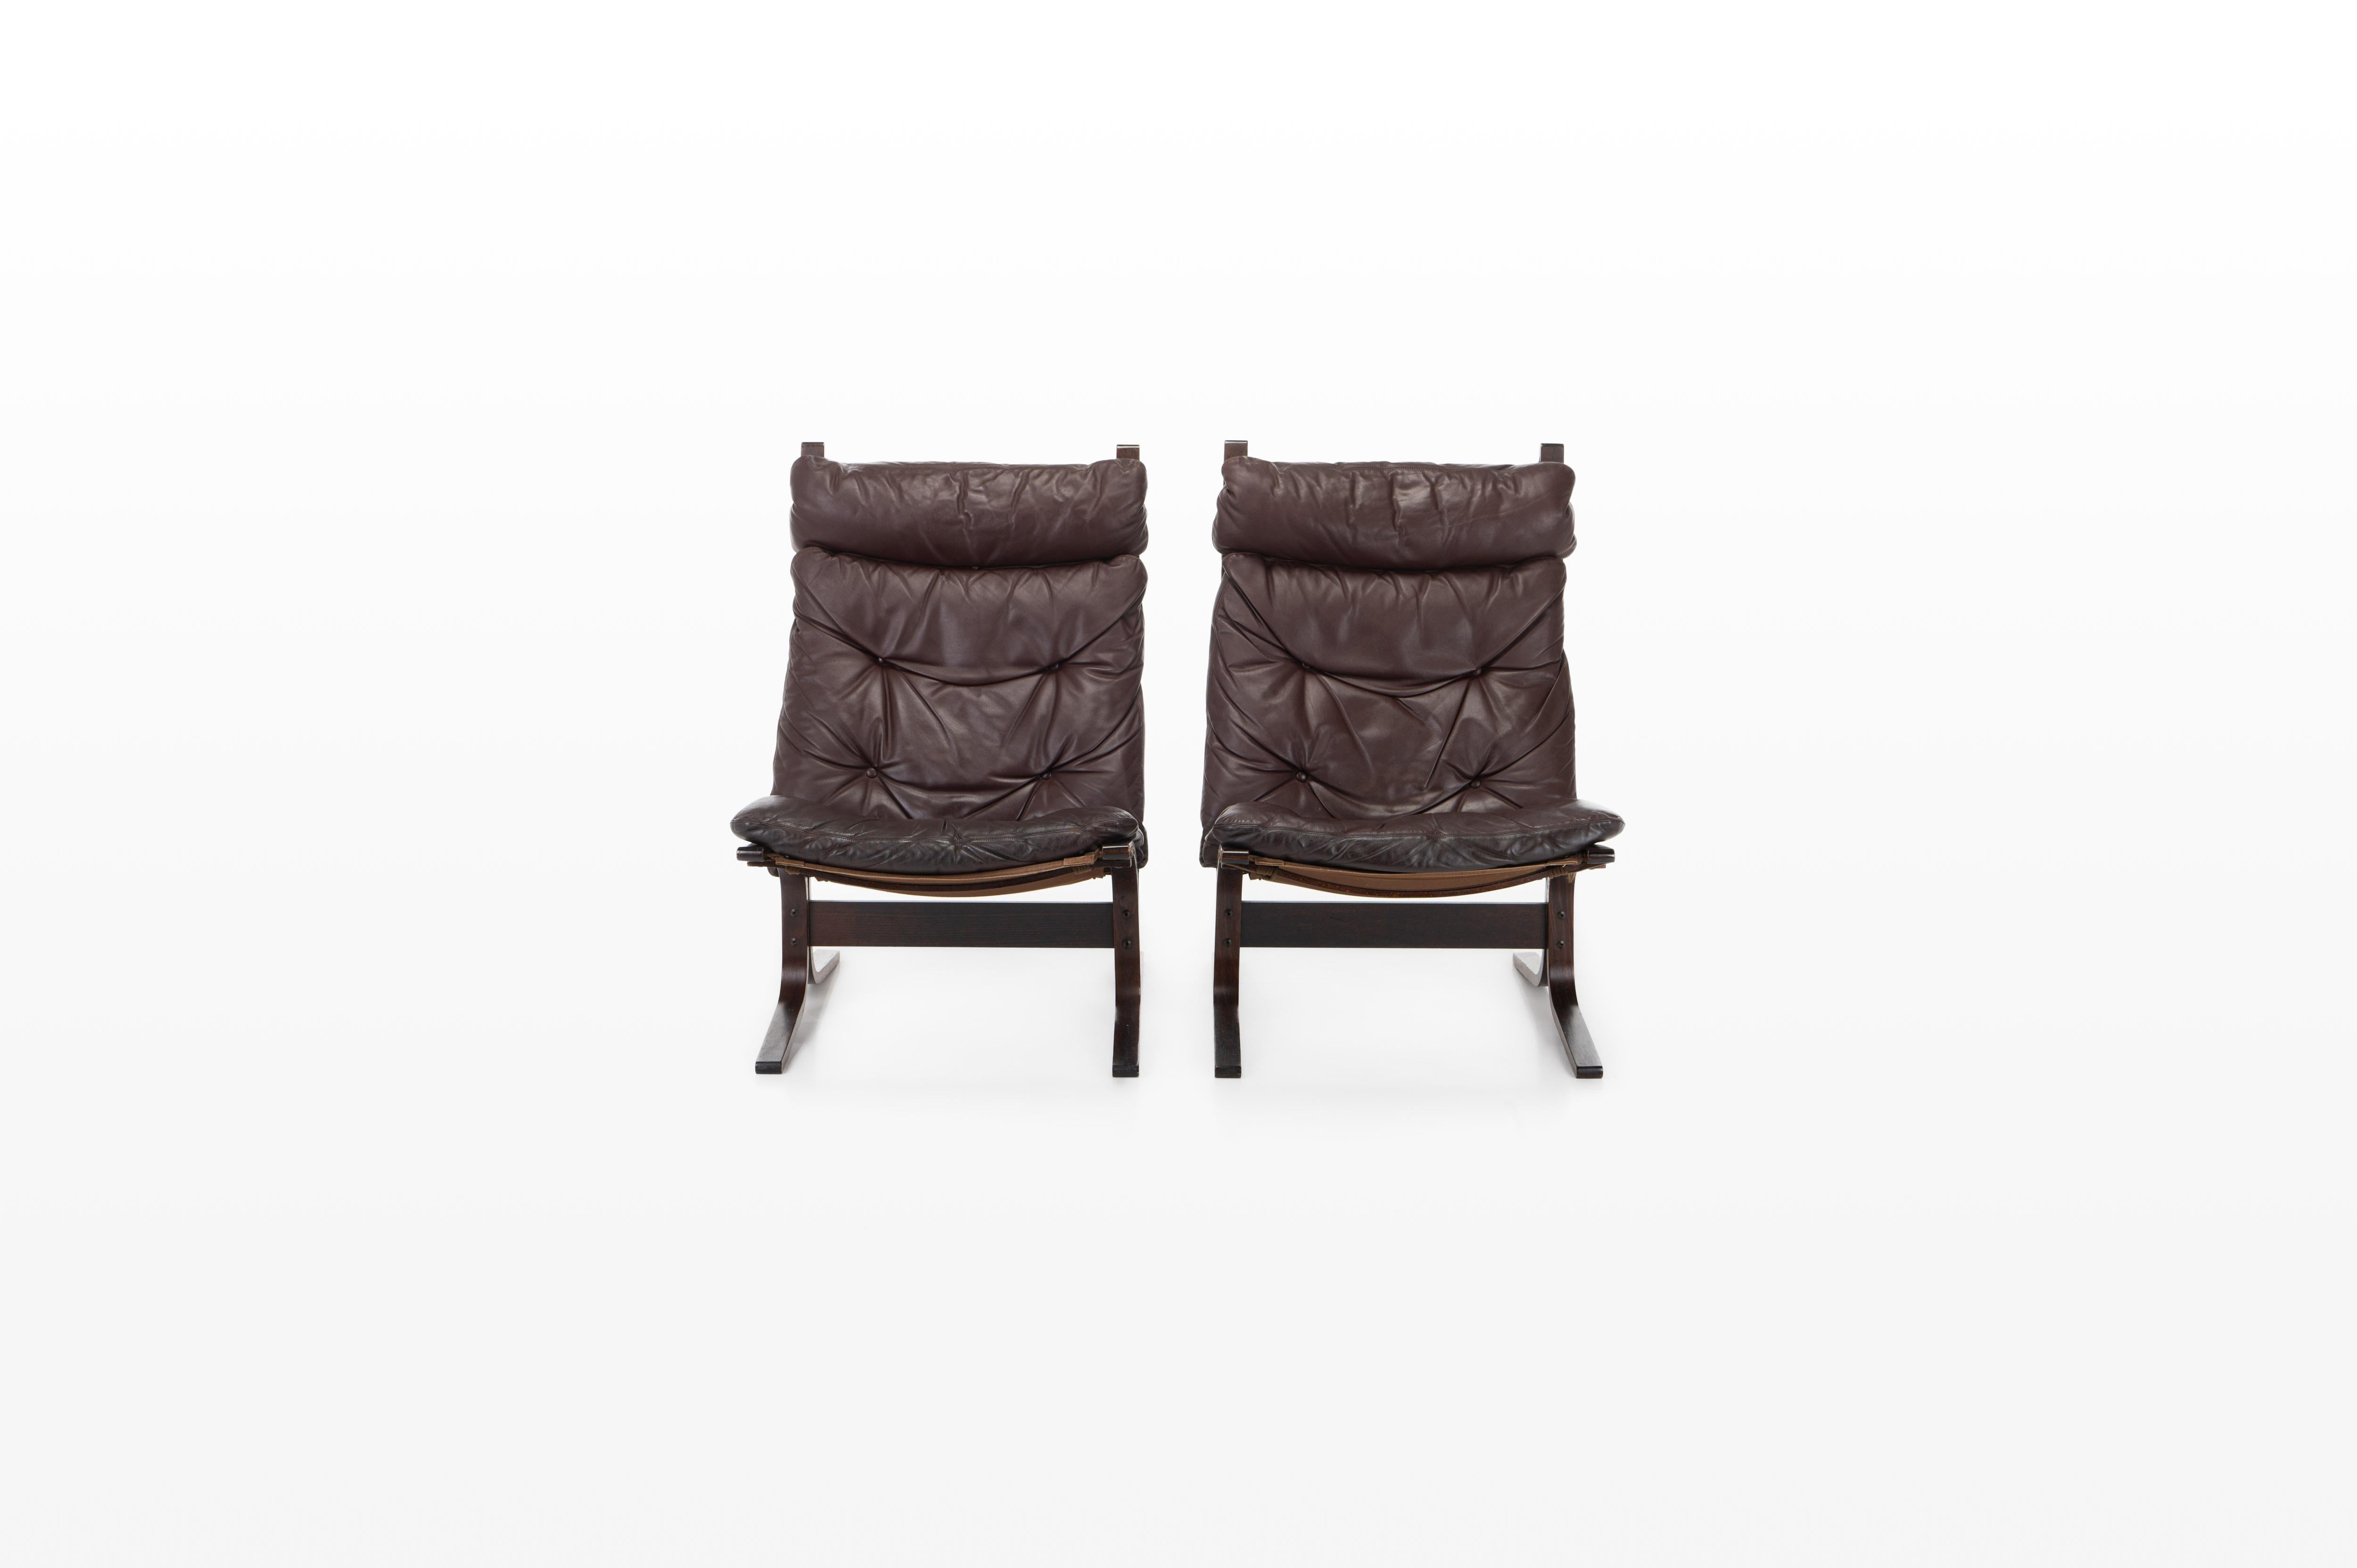 Tolles Paar Vintage-Sessel 'Siesta'. Diese Lounge-Sessel wurden von Ingmar Relling entworfen und von Westnofa, Norwegen, hergestellt. Bordeaux / braunes Leder in sehr gutem Originalzustand.